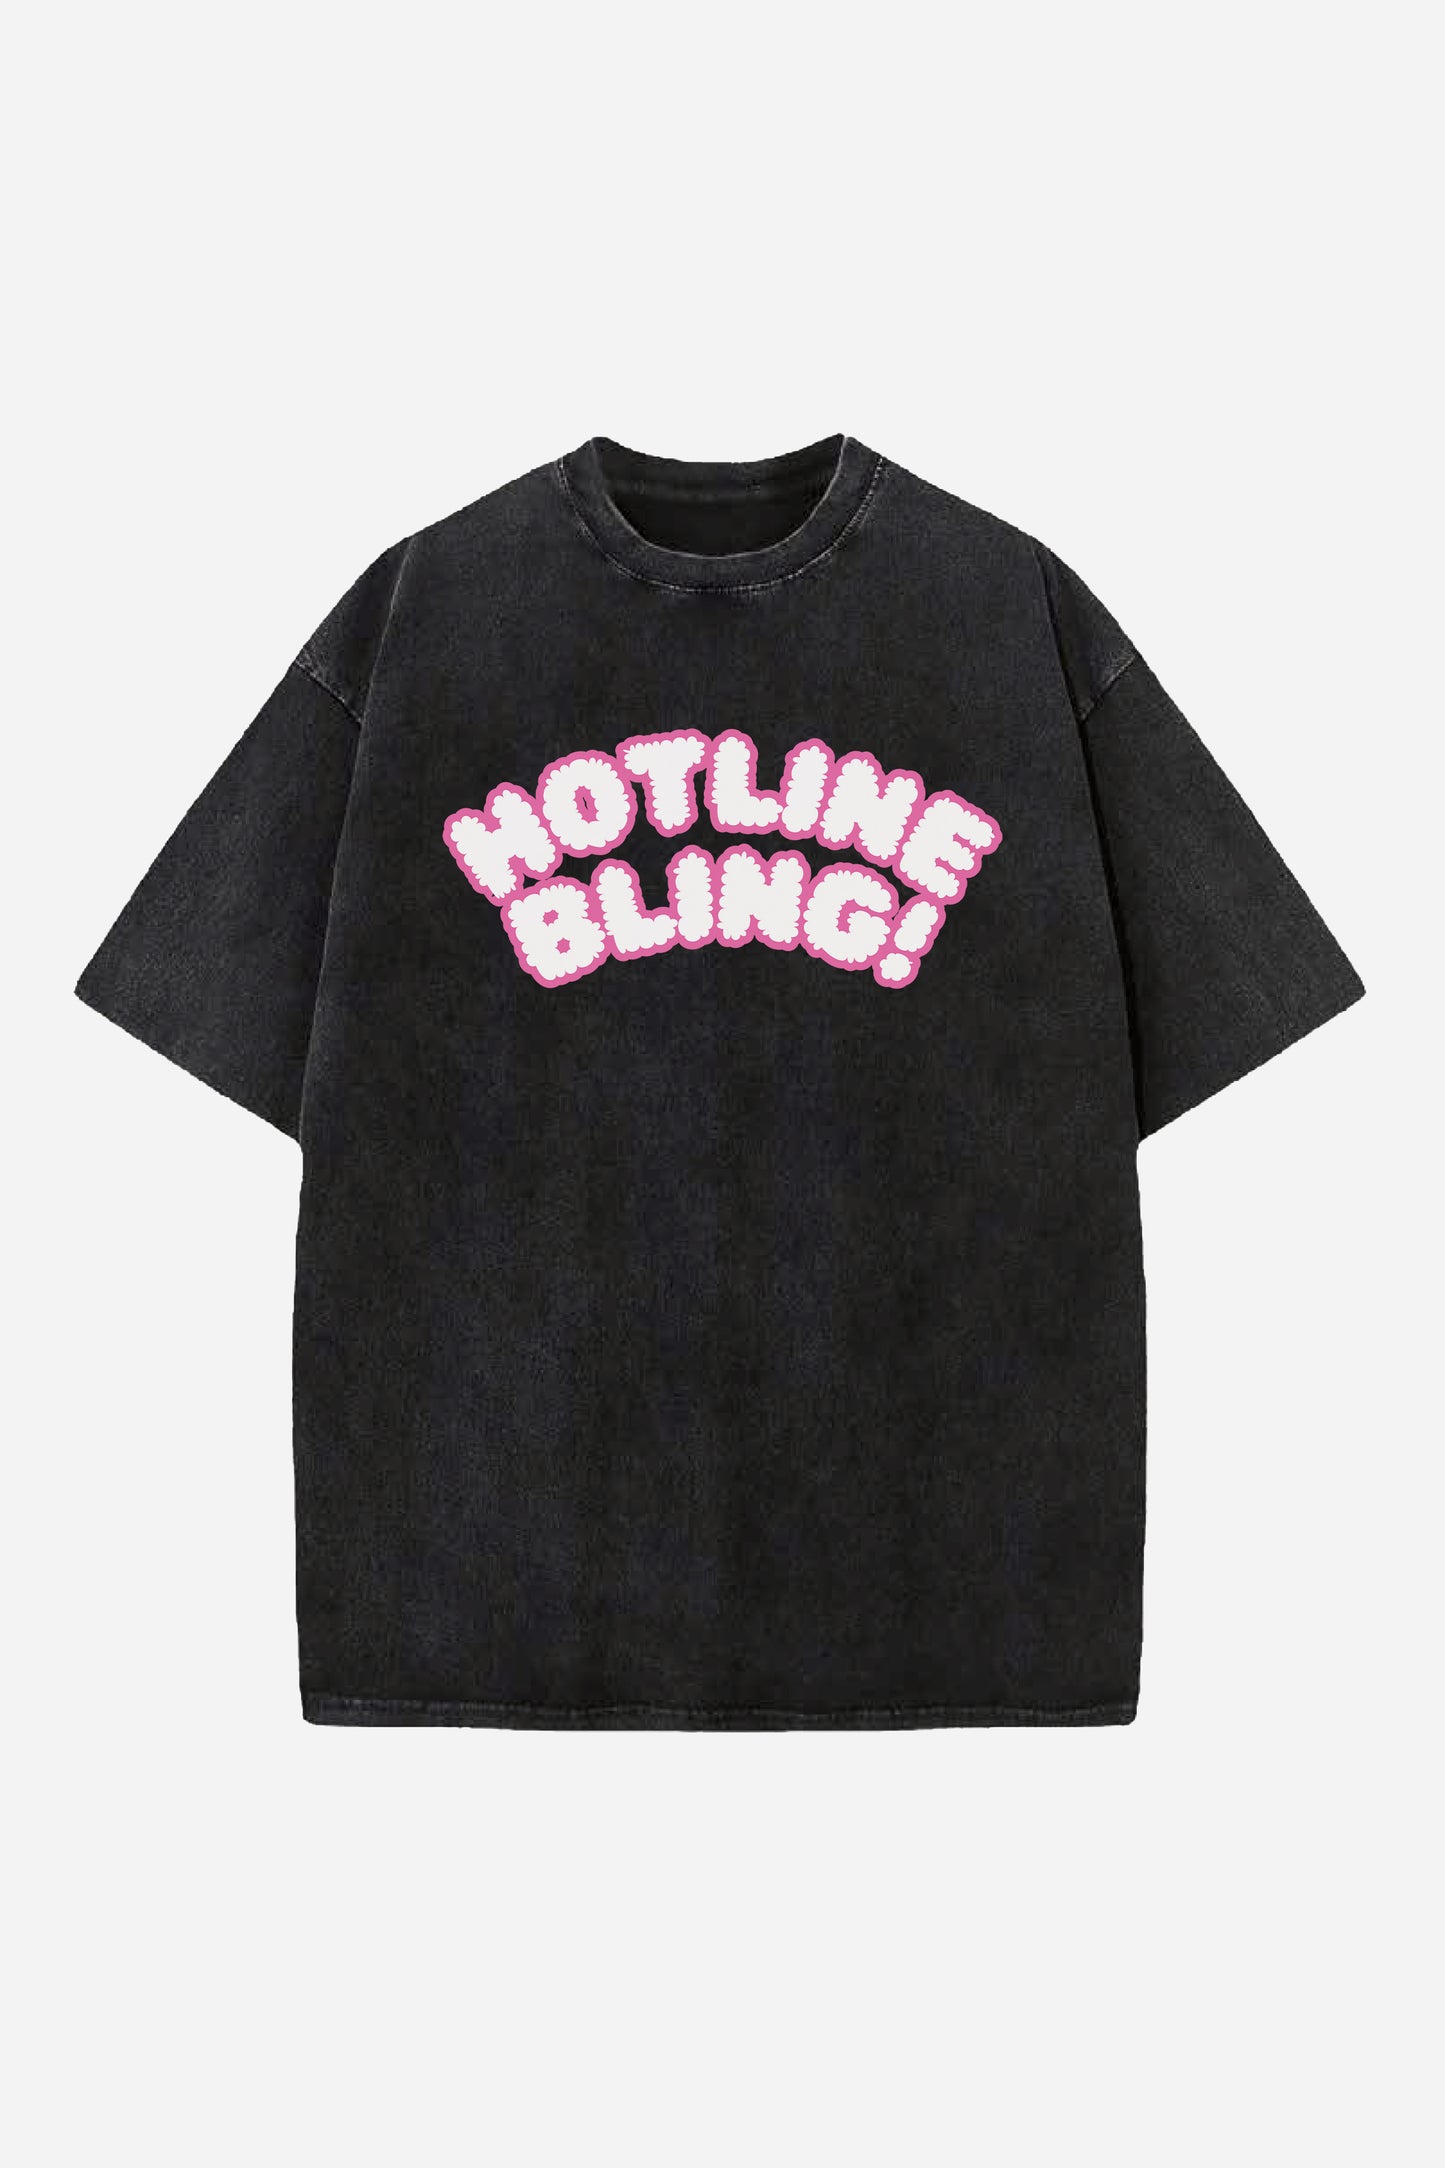 Hotline Bling Designed Vintage Oversized T-shirt